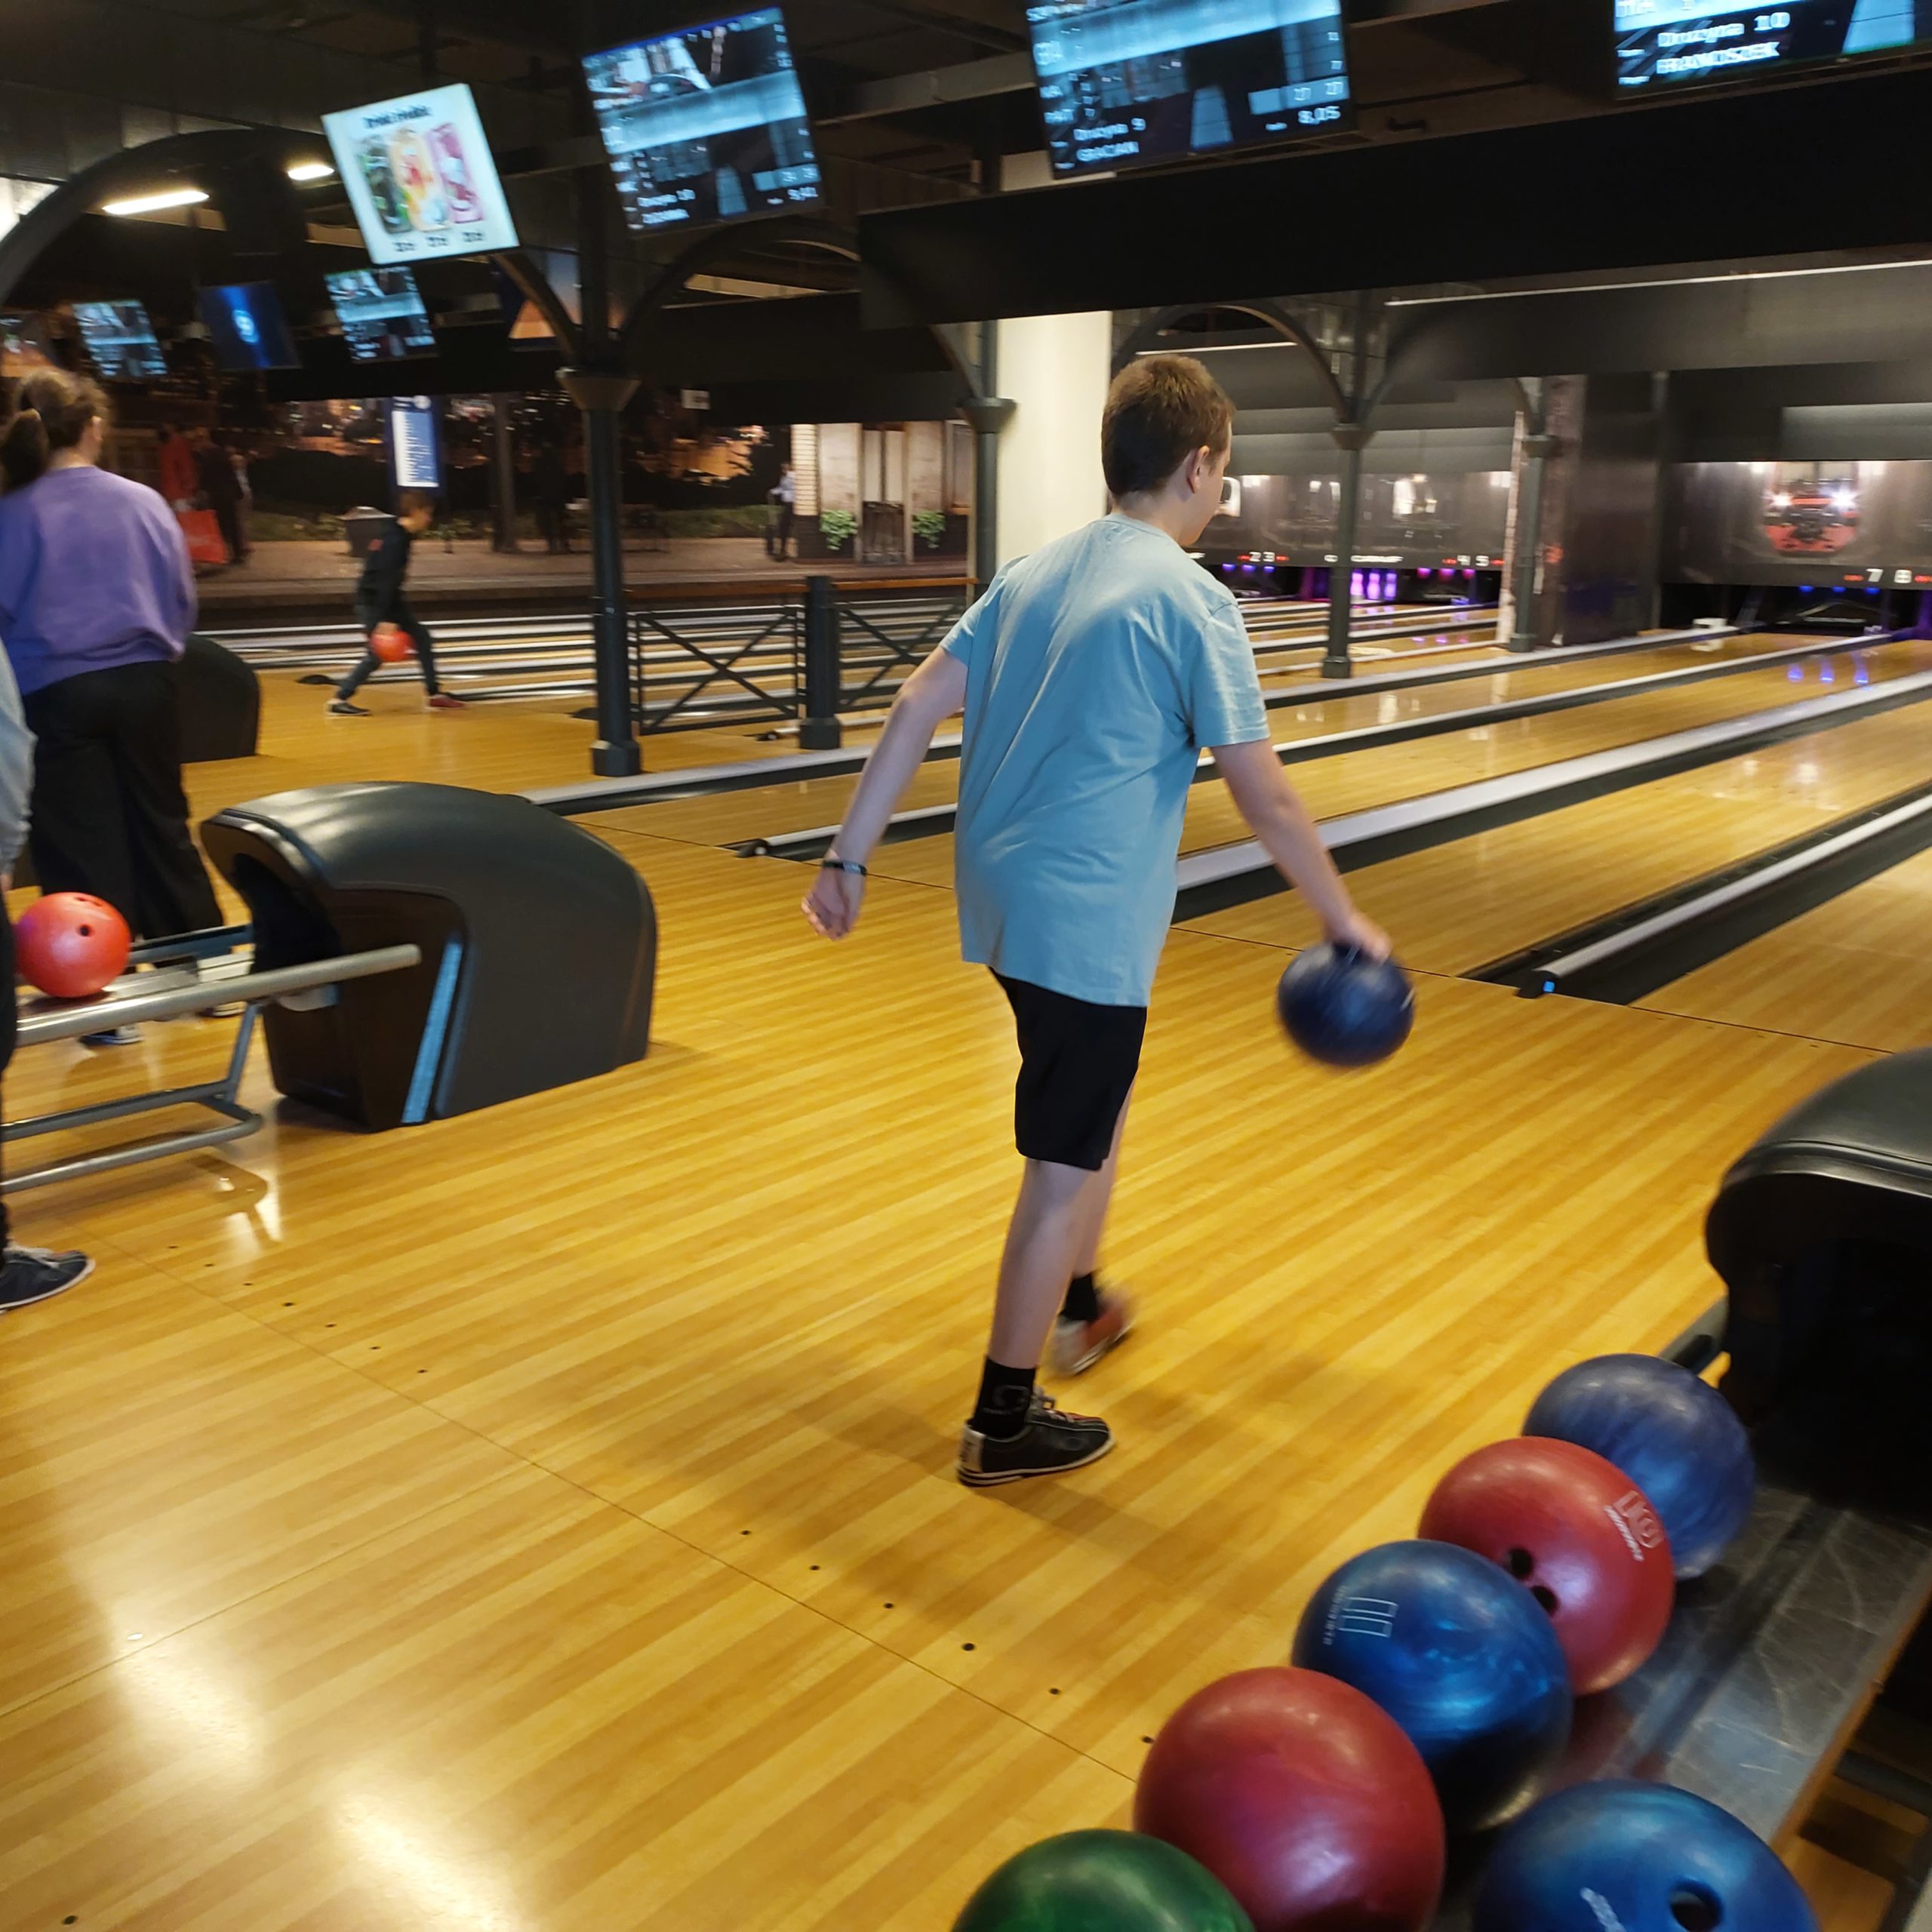 Chłopiec ubrany w szarą koszulkę i czarne spodenki stoi na torze bowlingowym i trzyma w rękach kulę do gry.